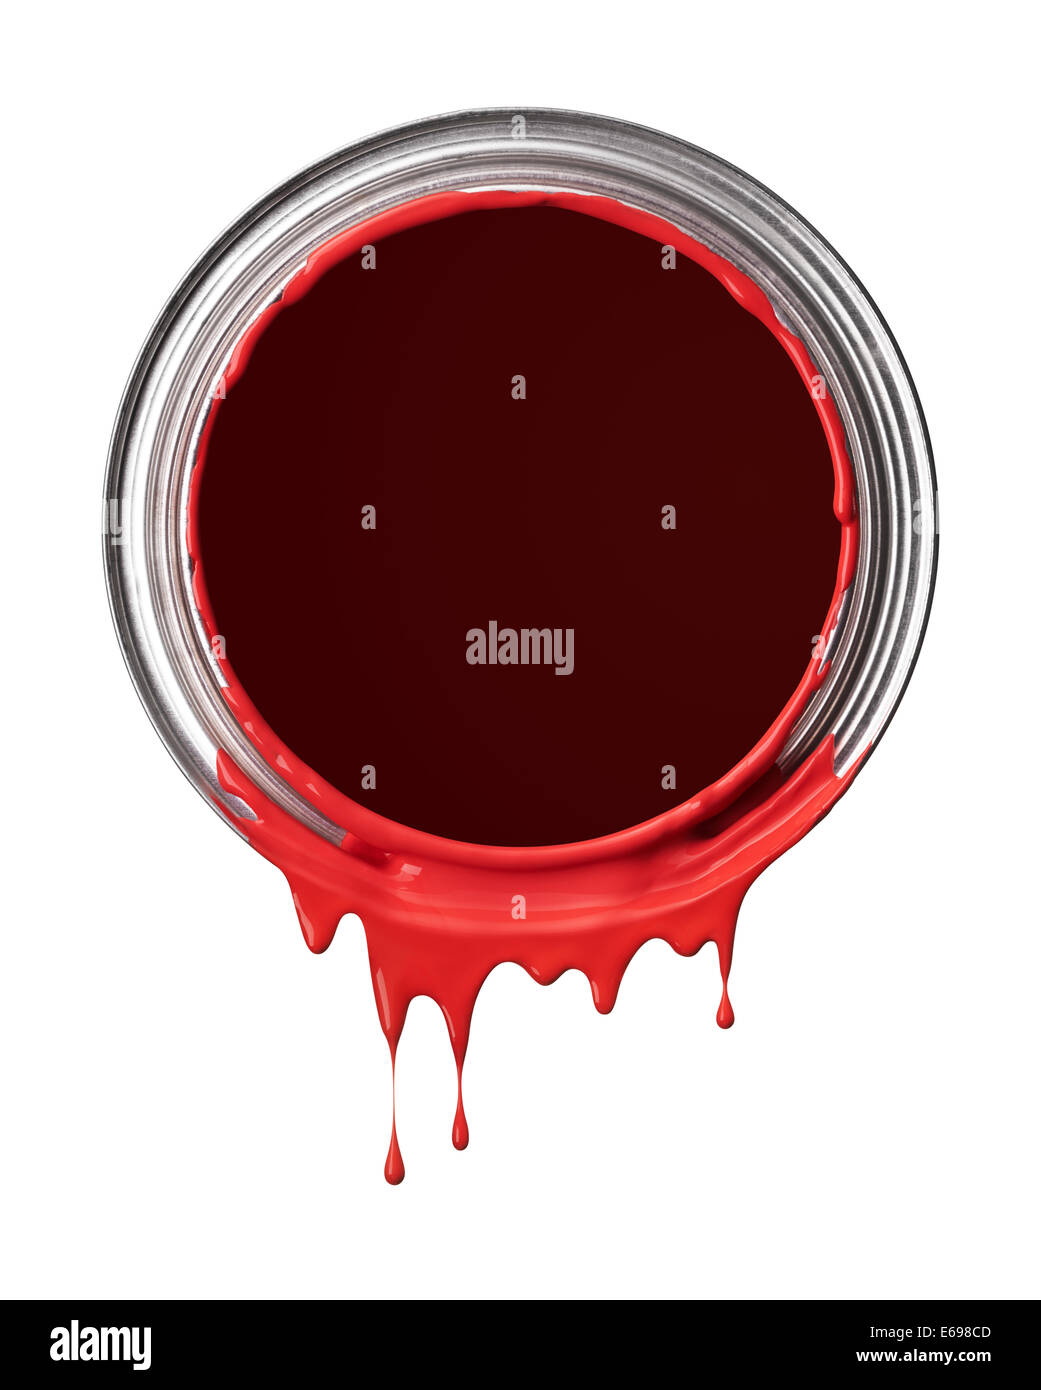 Finiture in vernice rossa versando da stagno con gocciolamenti Foto Stock